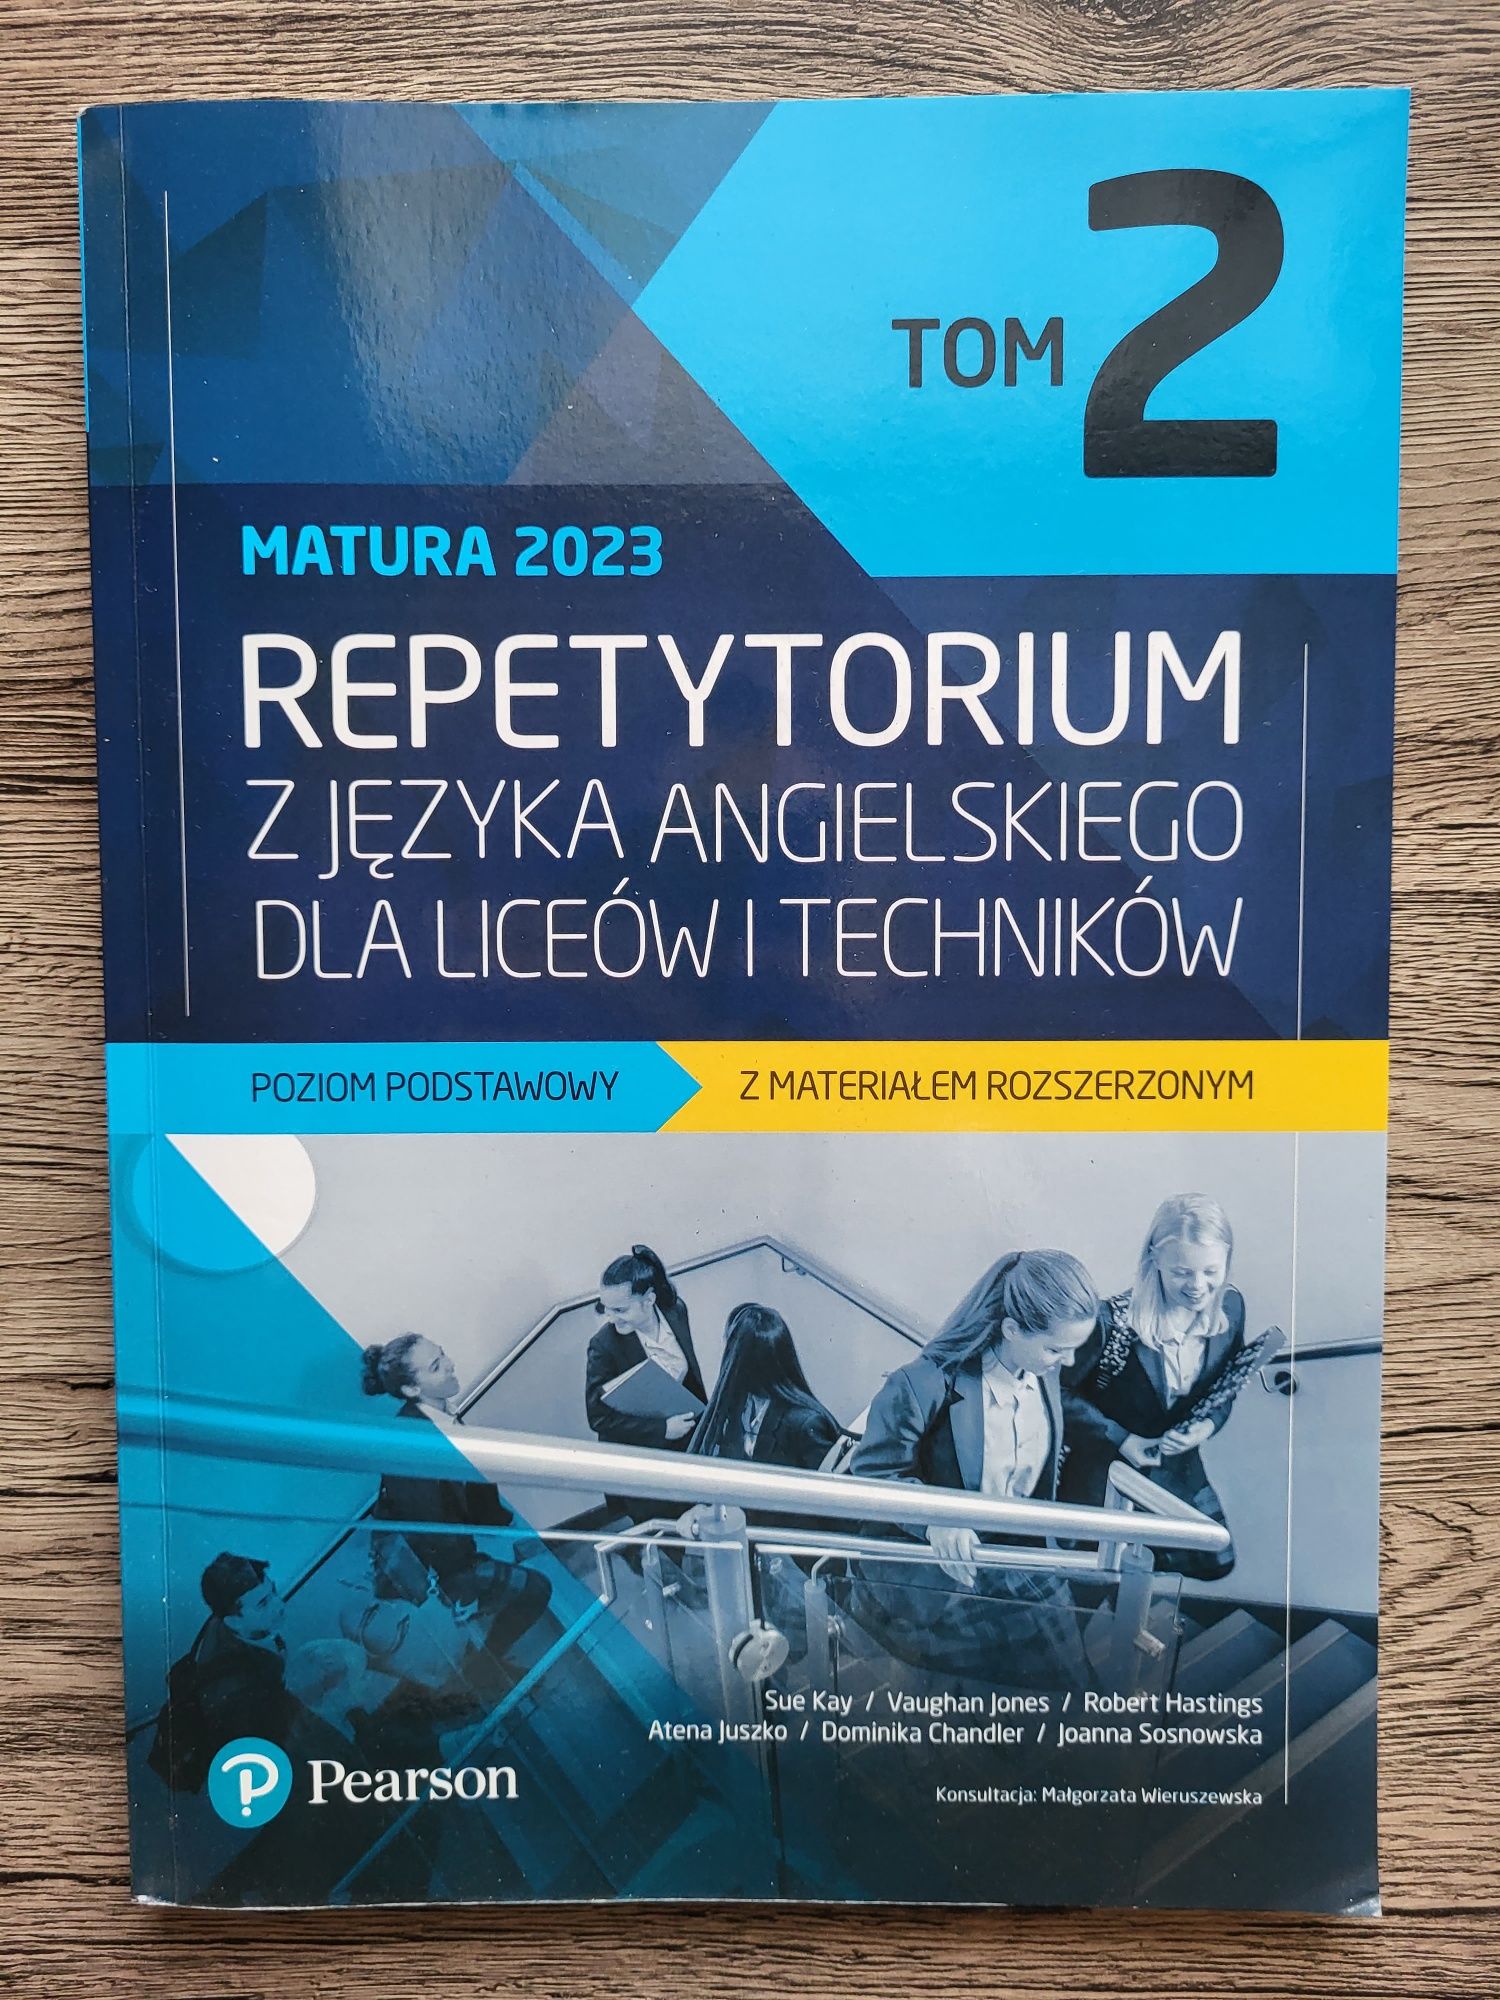 TOM 2 Pearson - Repetytorium z języka angielskiego z materiałem rozsz.